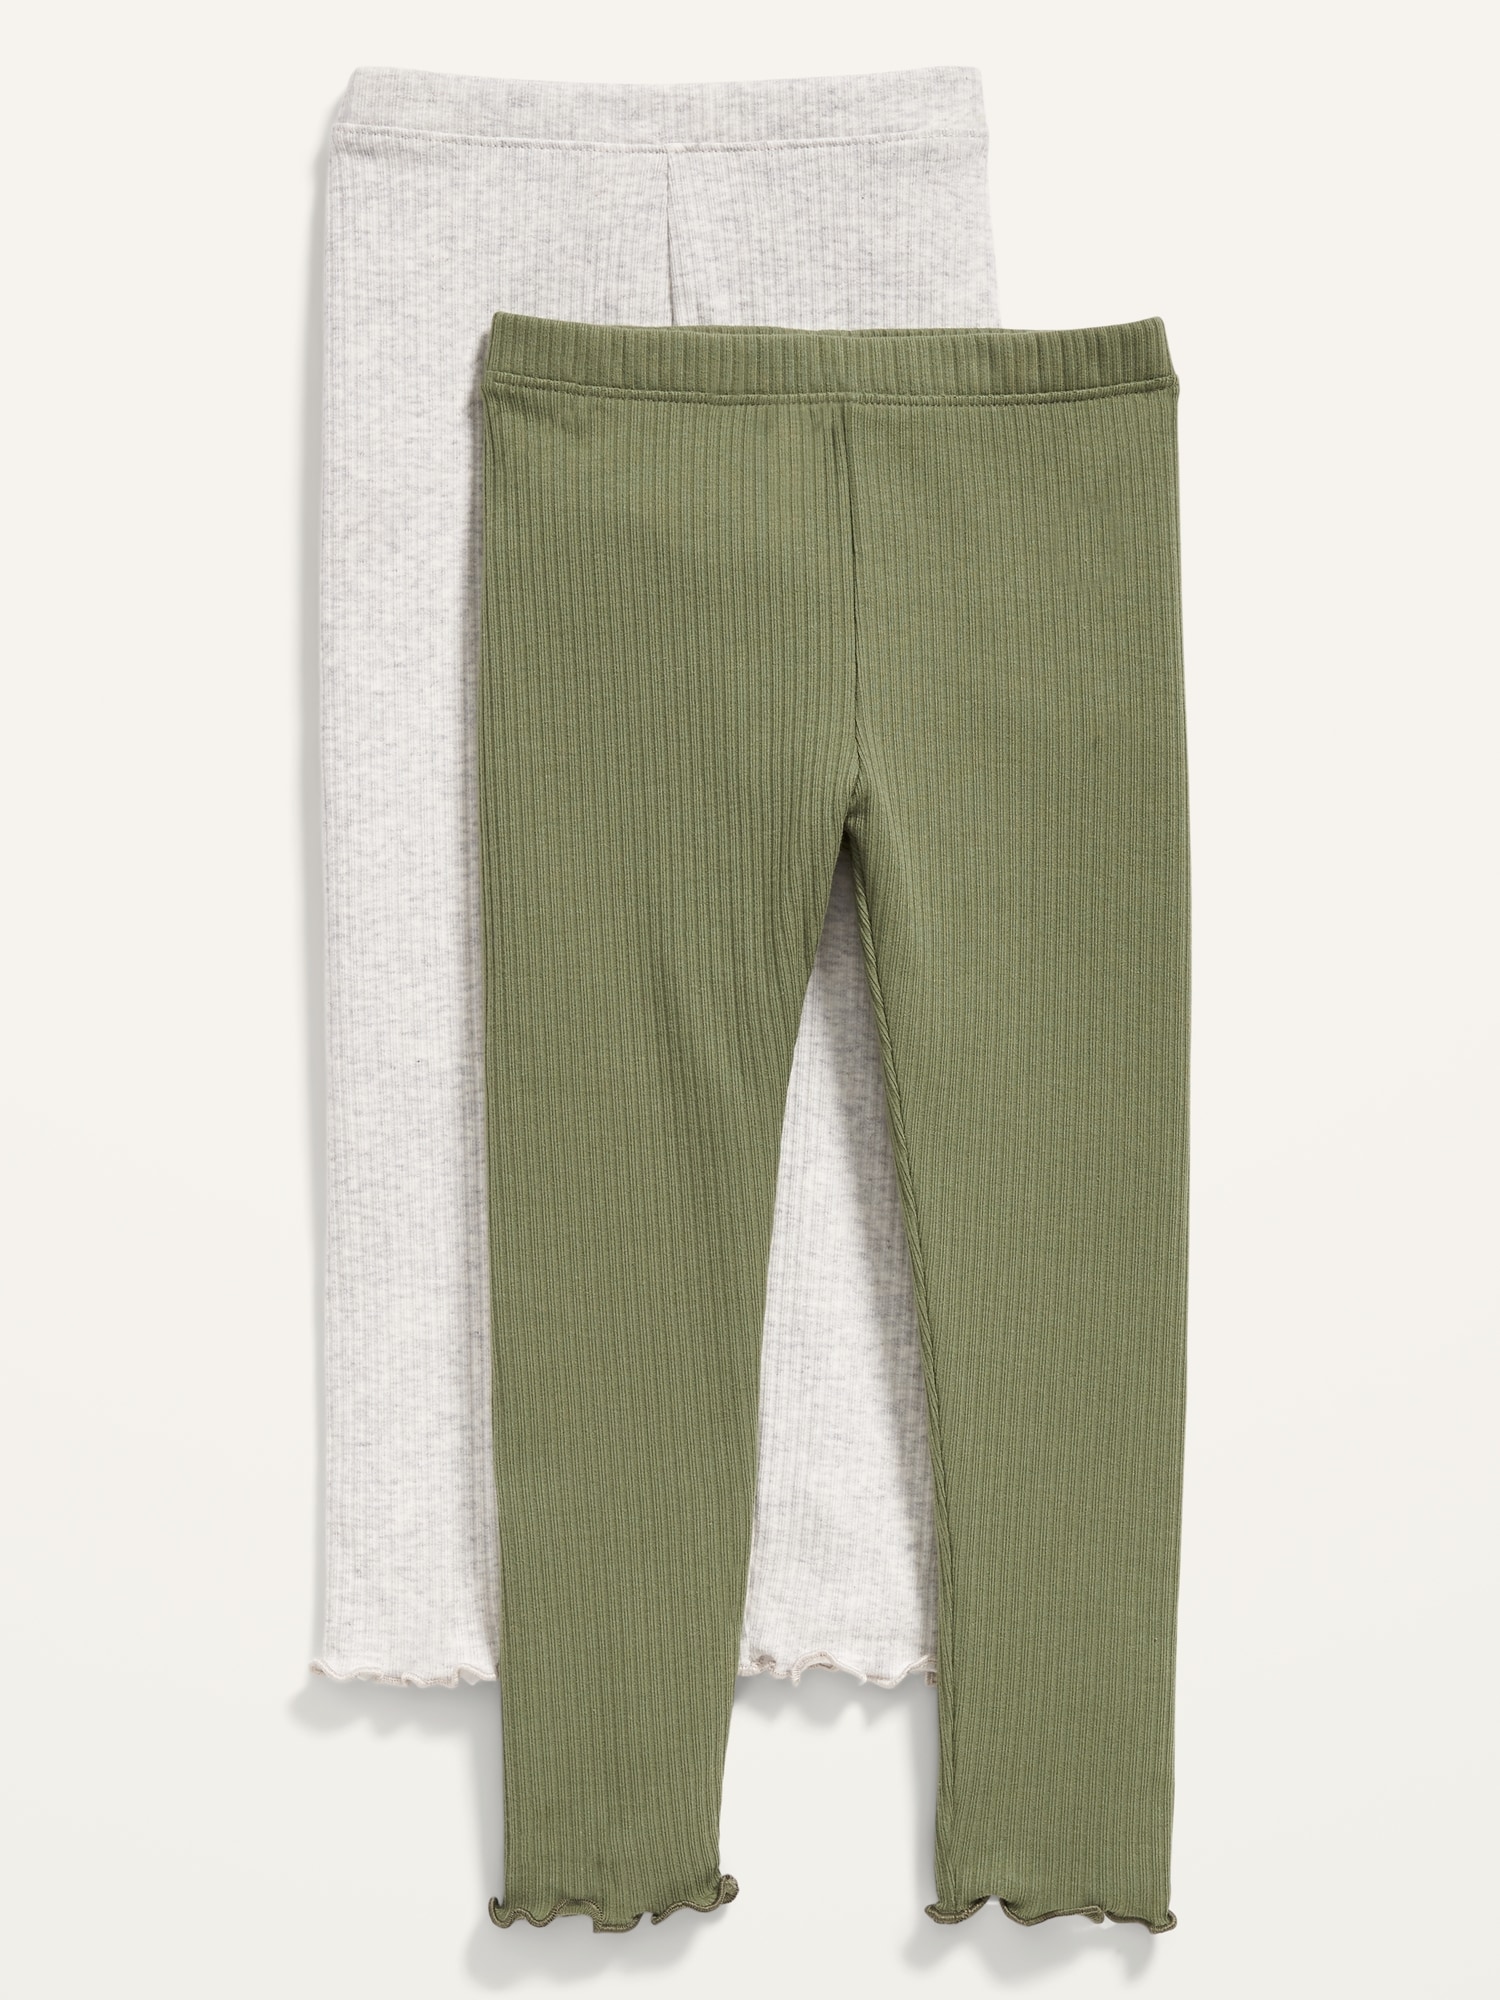 2-pack Rib-knit Leggings - Dark green/light green - Kids